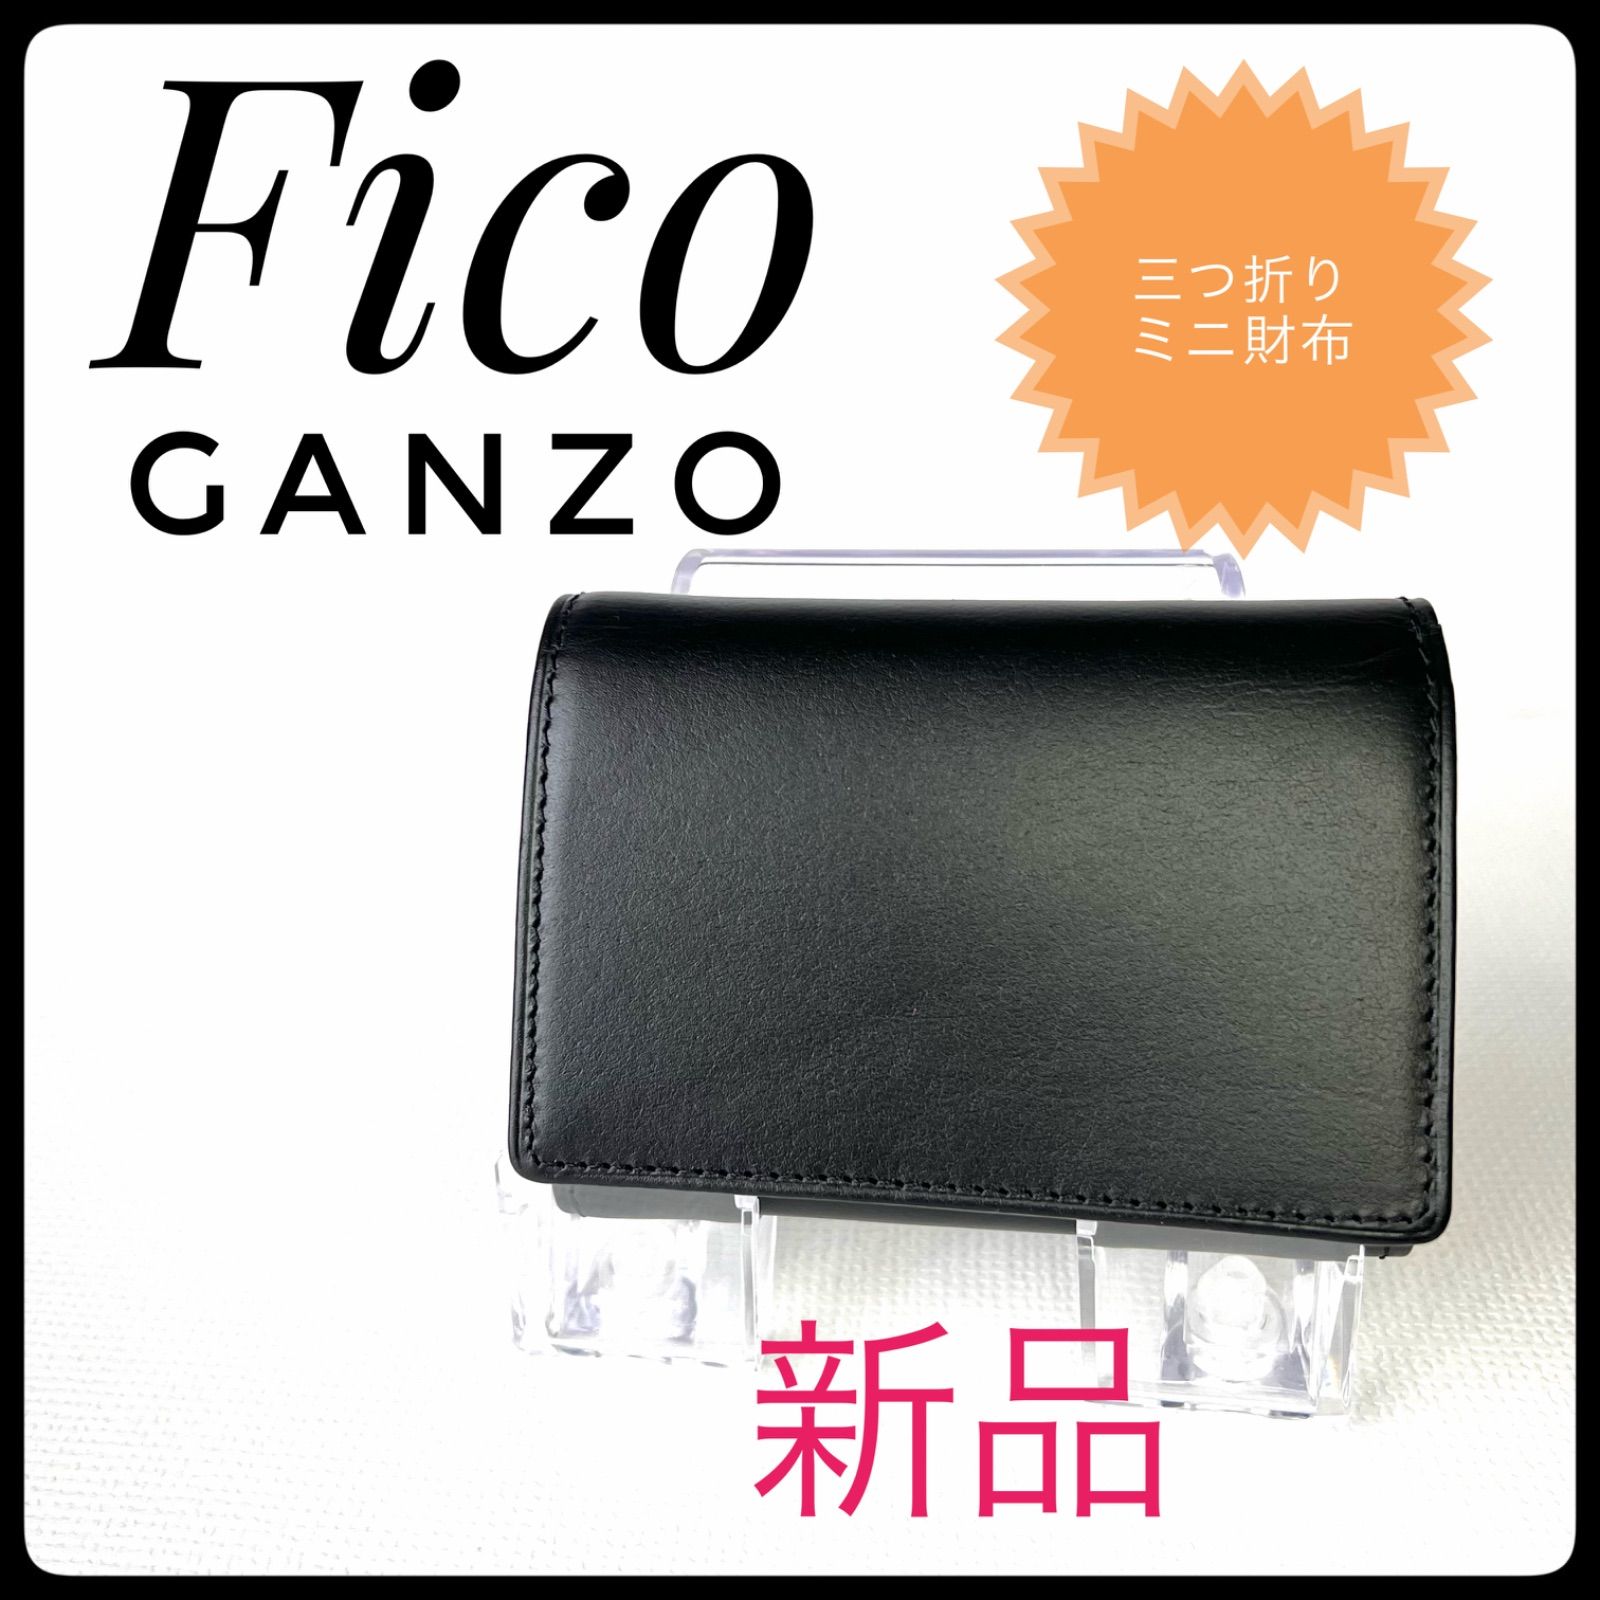 【新品タグ付】GANZO Fico 三つ折り財布 ベジタブルタンニン 牛革